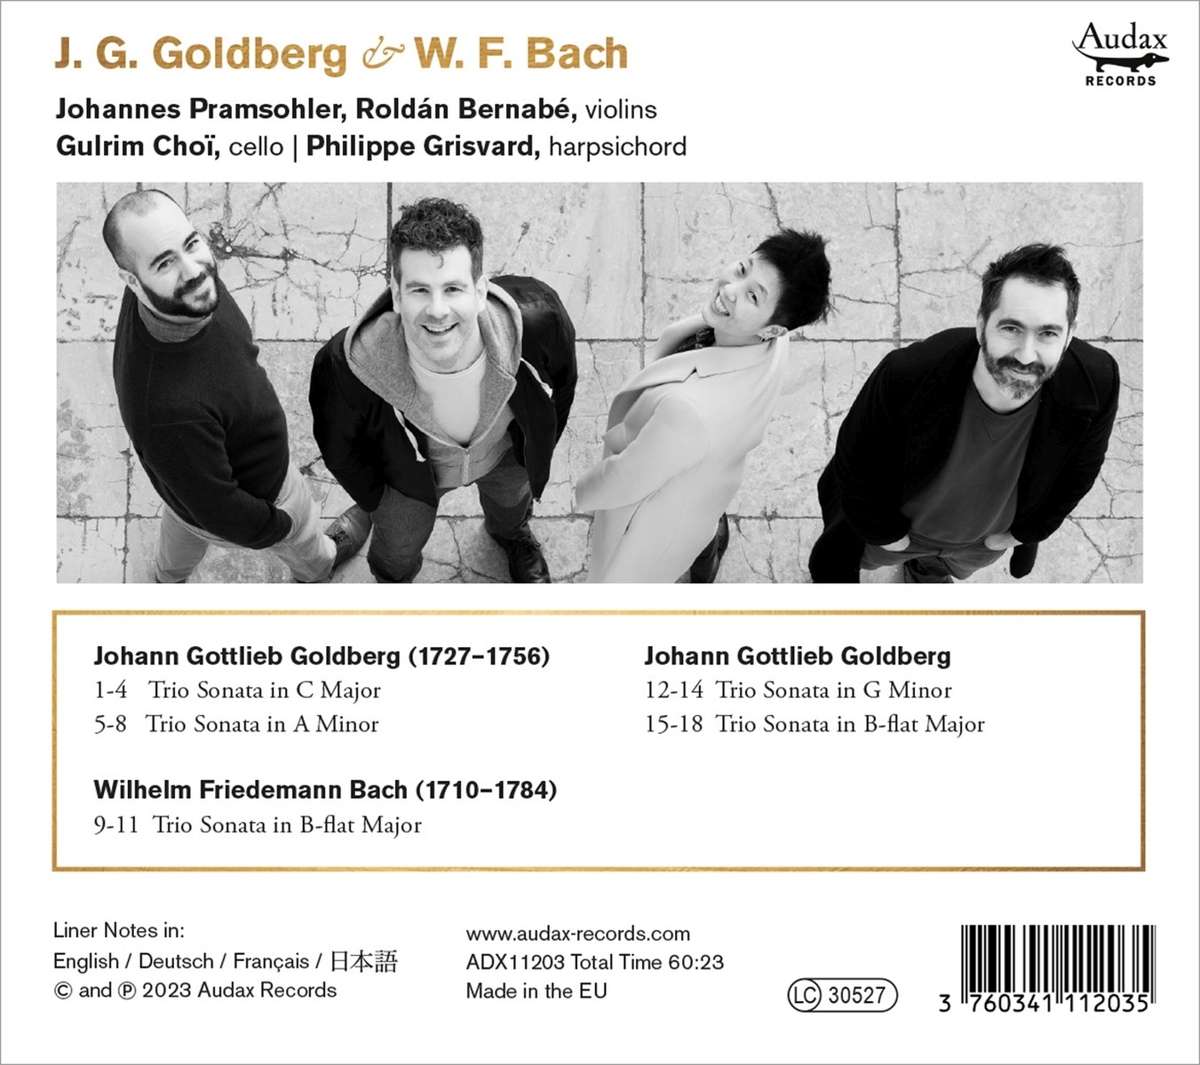 Ensemble Diderot 고틀리프: 골드베르크 변주곡, 트리오 소나타 / W.F. 바흐: 트리오 소나타 (J.G. Goldberg / W.F. Bach: Trio Sonatas)